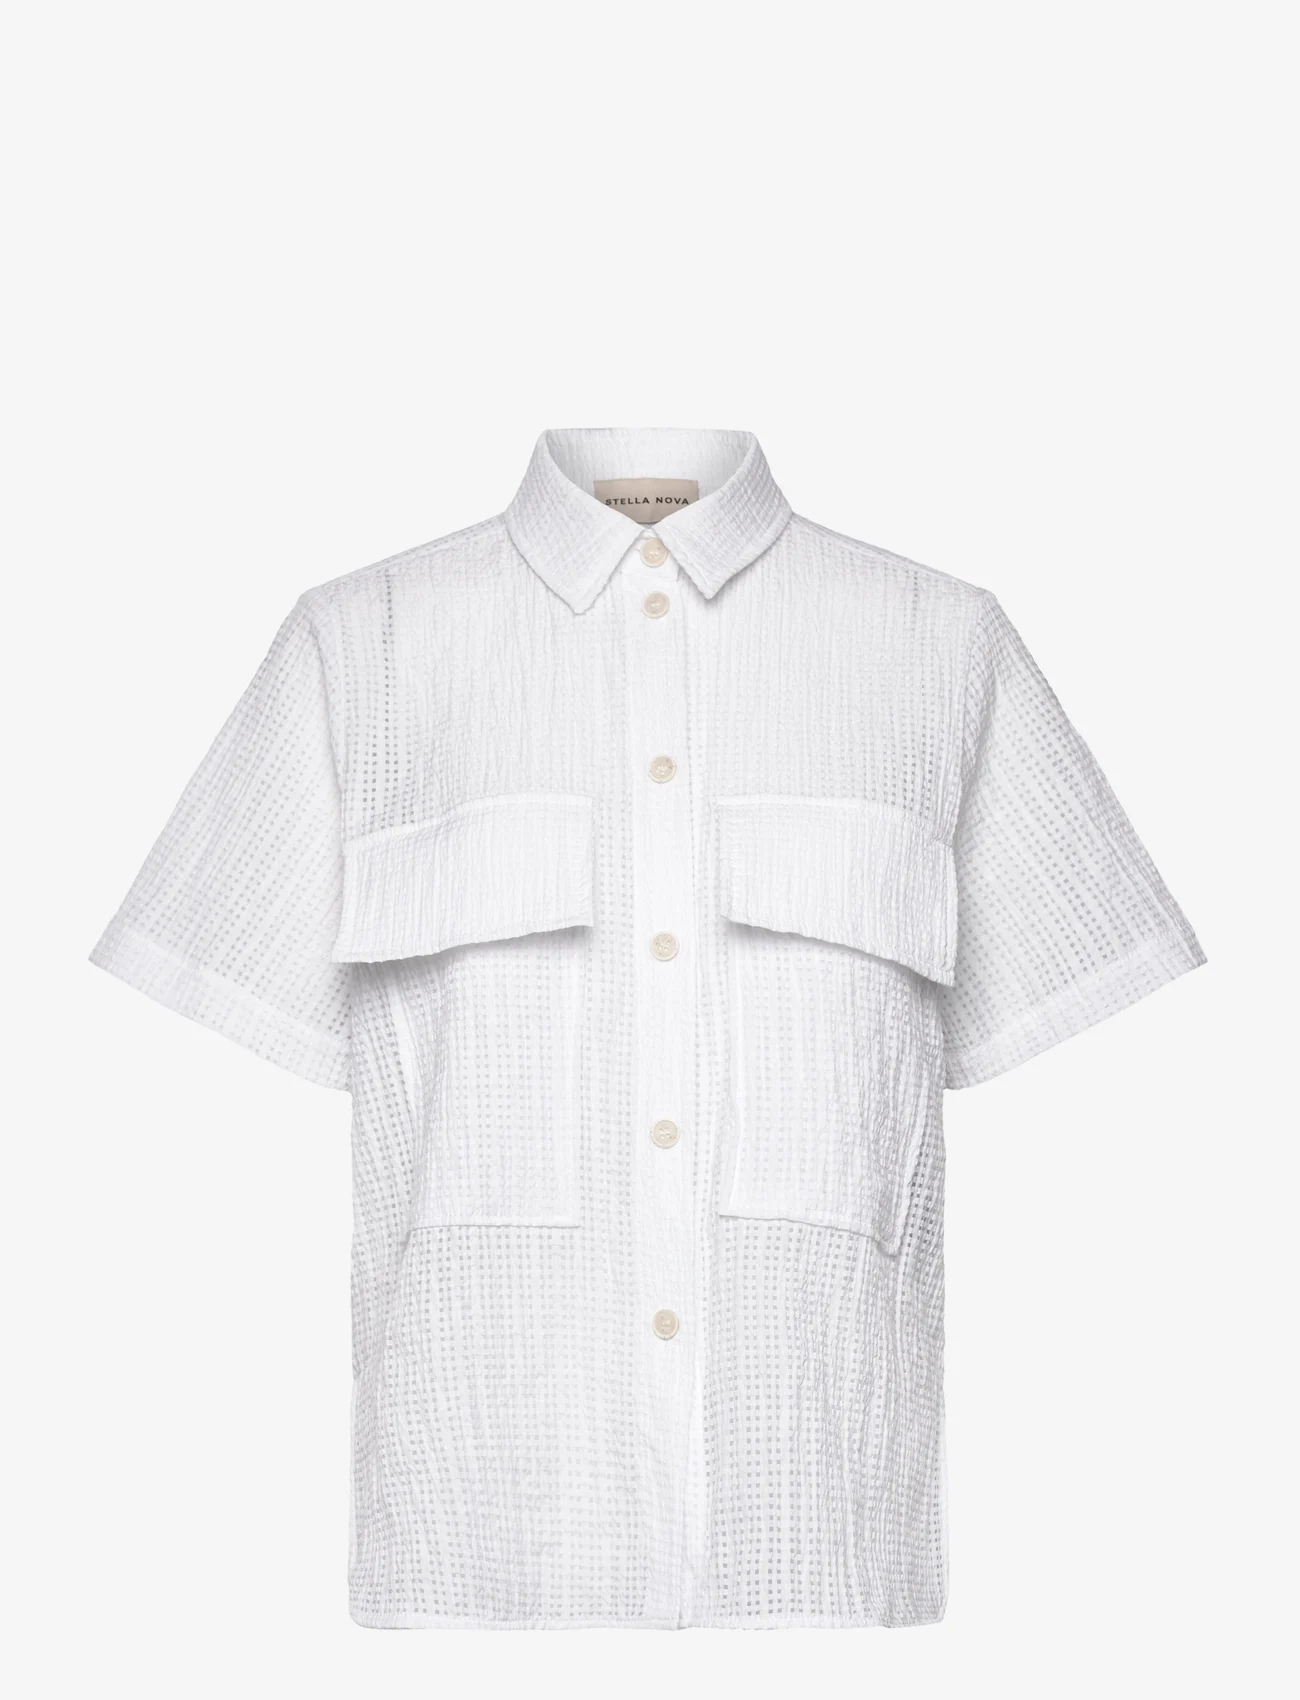 Stella Nova - Tessie - short-sleeved shirts - white - 0